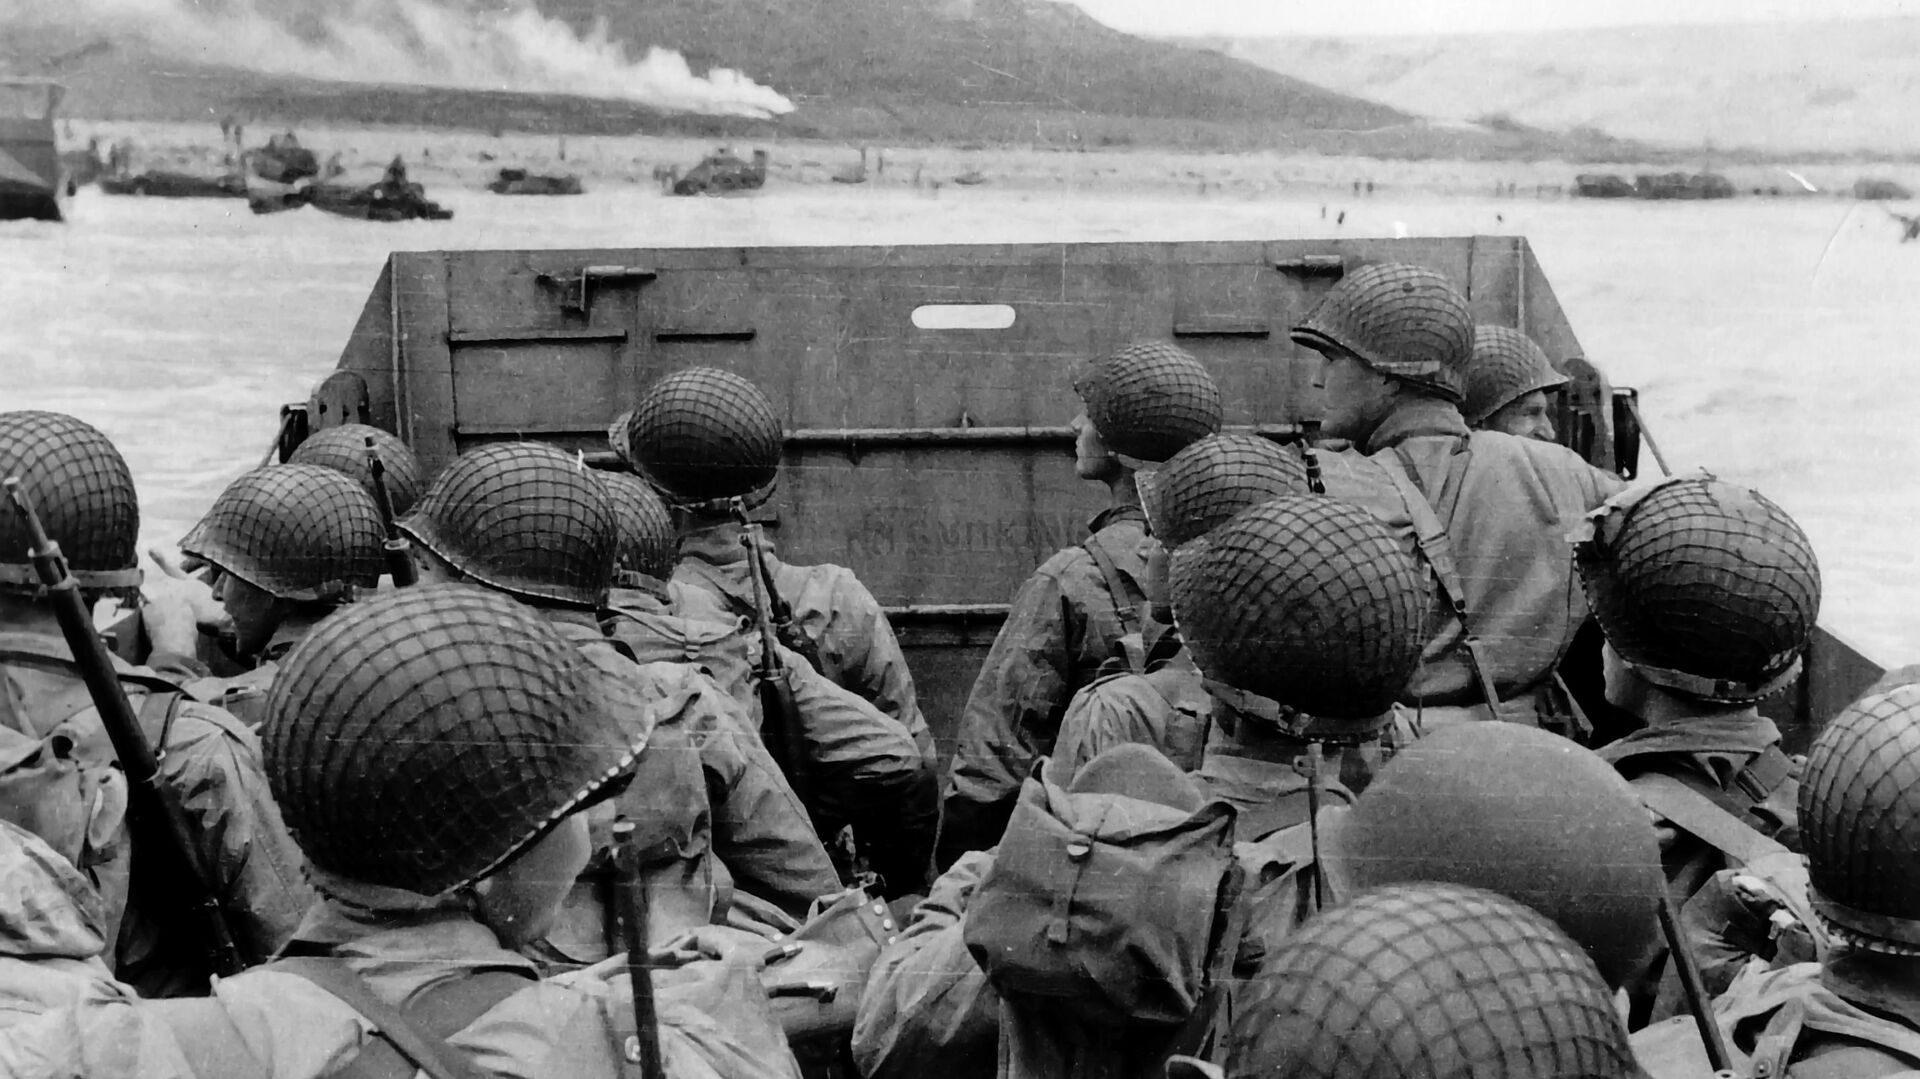 Высадка американских военных на десантном корабле на нормандский пляж Омаха во Франции. 6 июня 1944 - РИА Новости, 1920, 06.06.2019